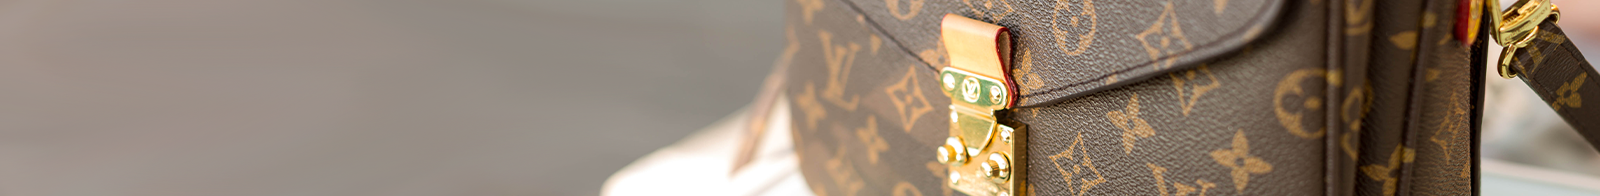 Louis Vuitton Mütze Monogram Anthrazit - MyLovelyBoutique